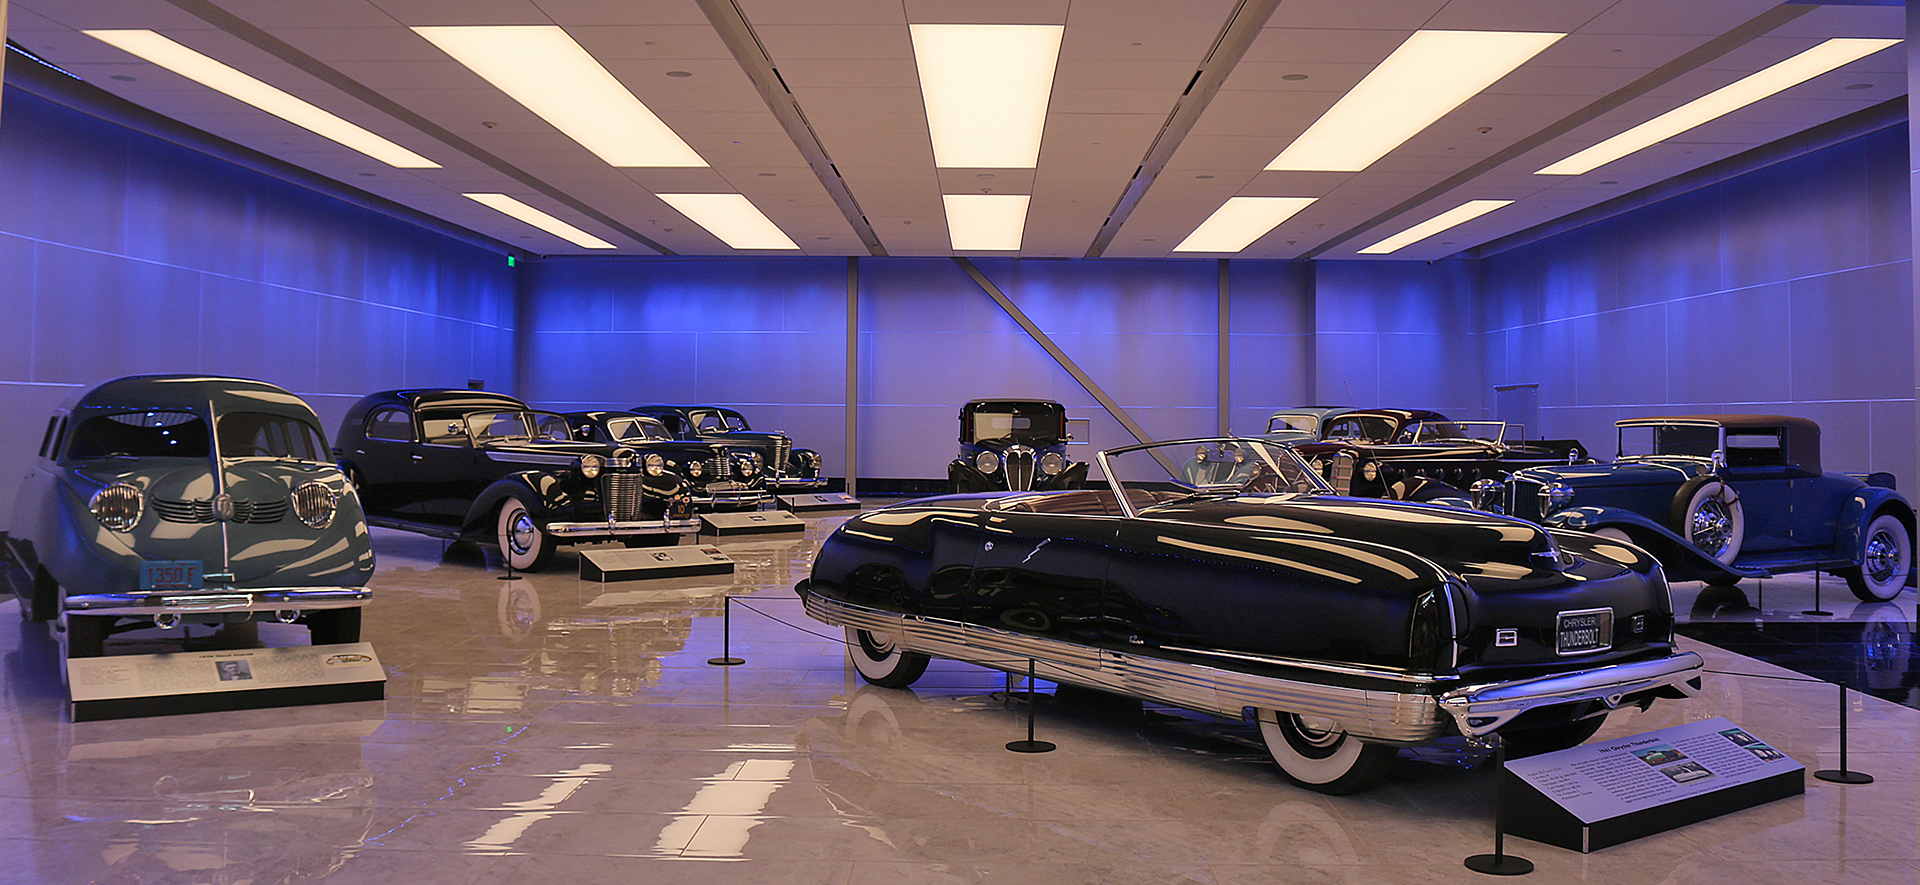 Savoy Automobile Museum